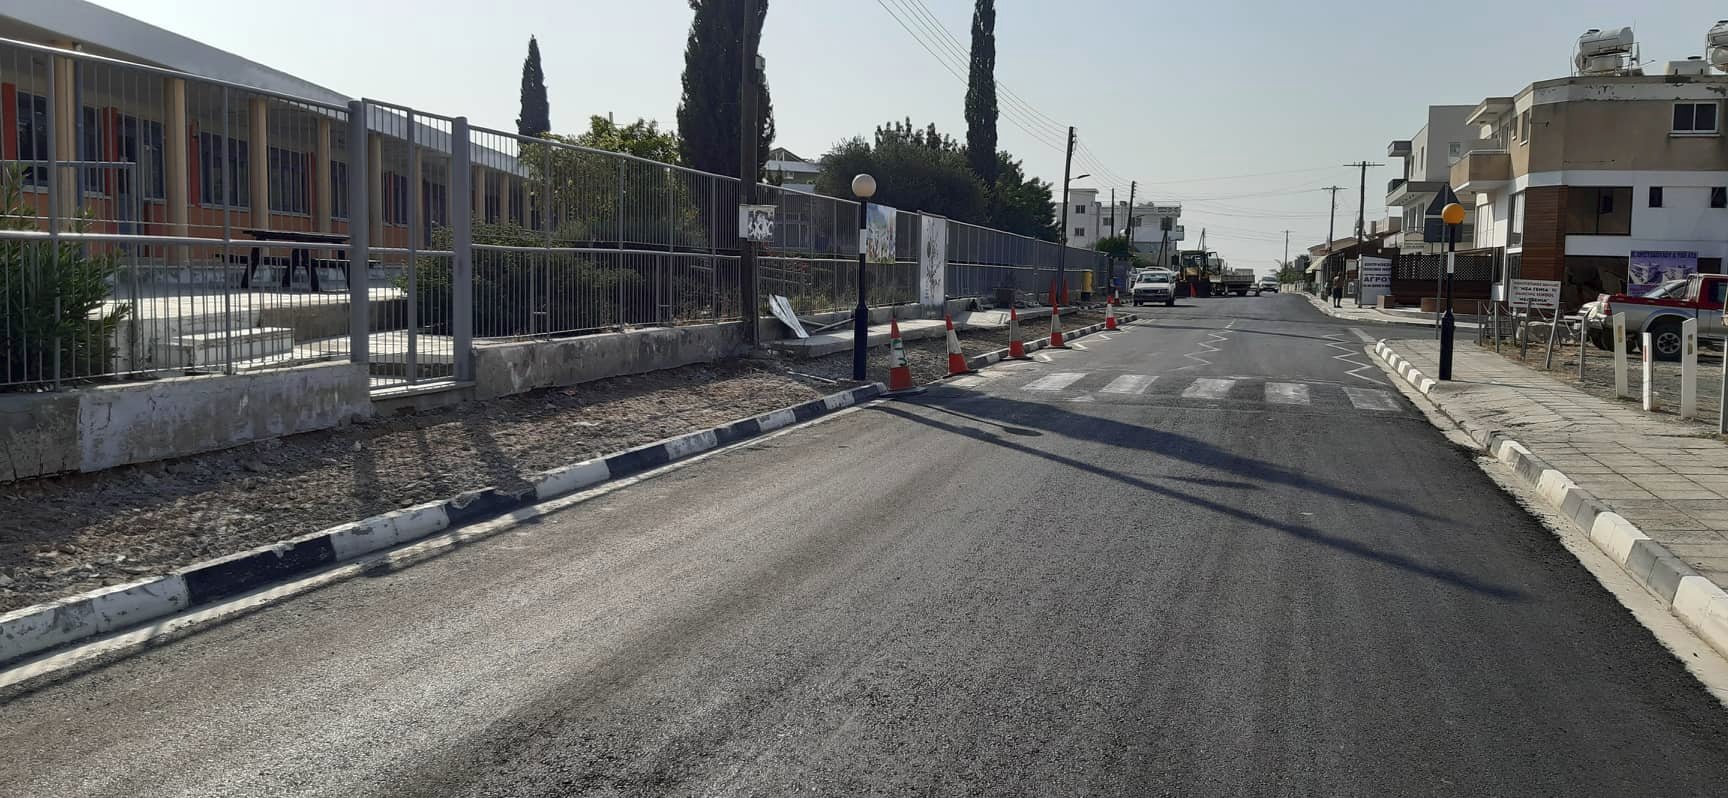 Βορόκληνη: Άρχισαν εργασίες κατασκευής και ανακατασκευής πεζοδρομίων (ΦΩΤΟ)